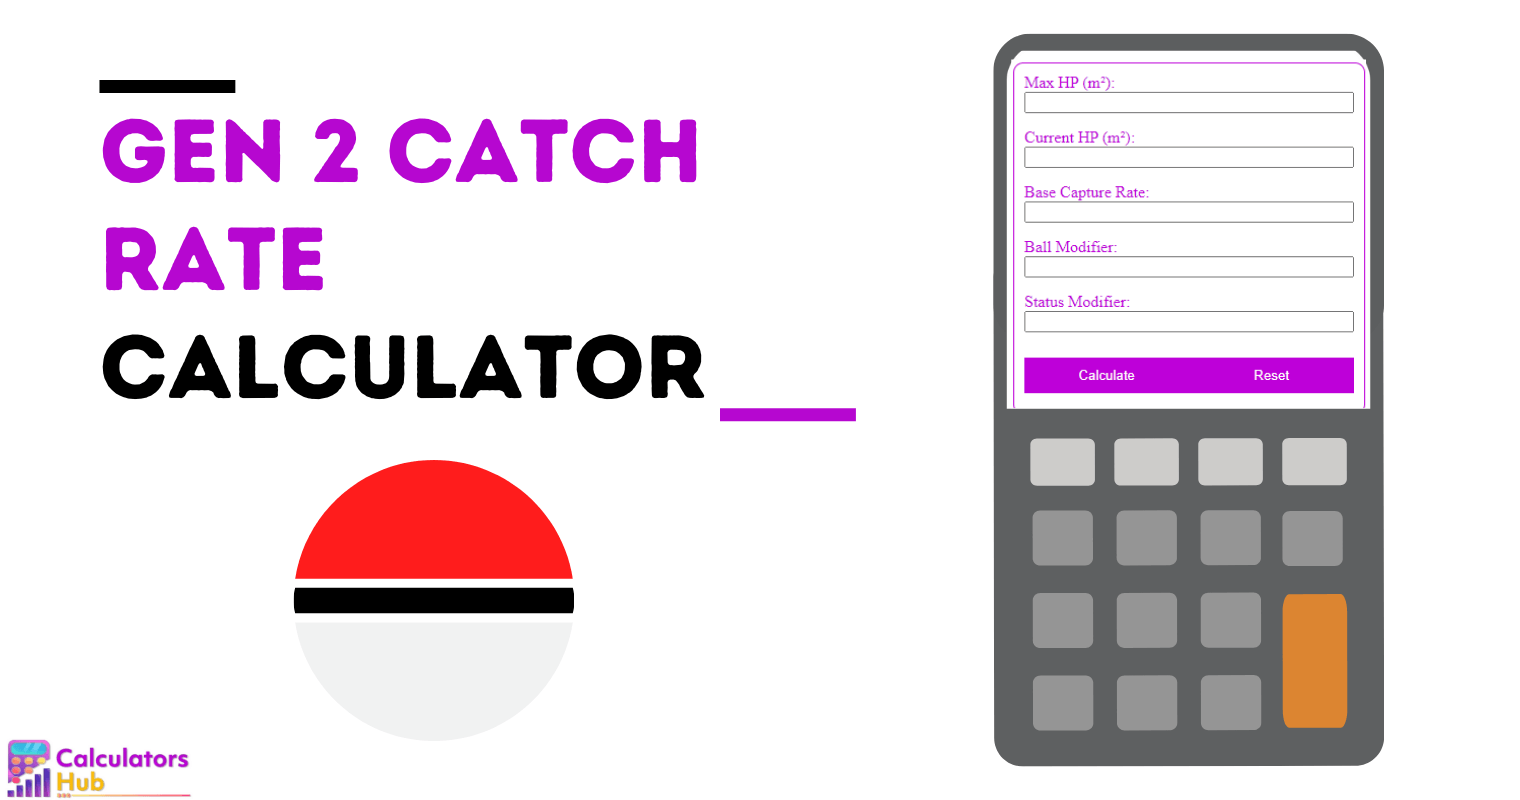 Gen 2 Catch Rate Calculator